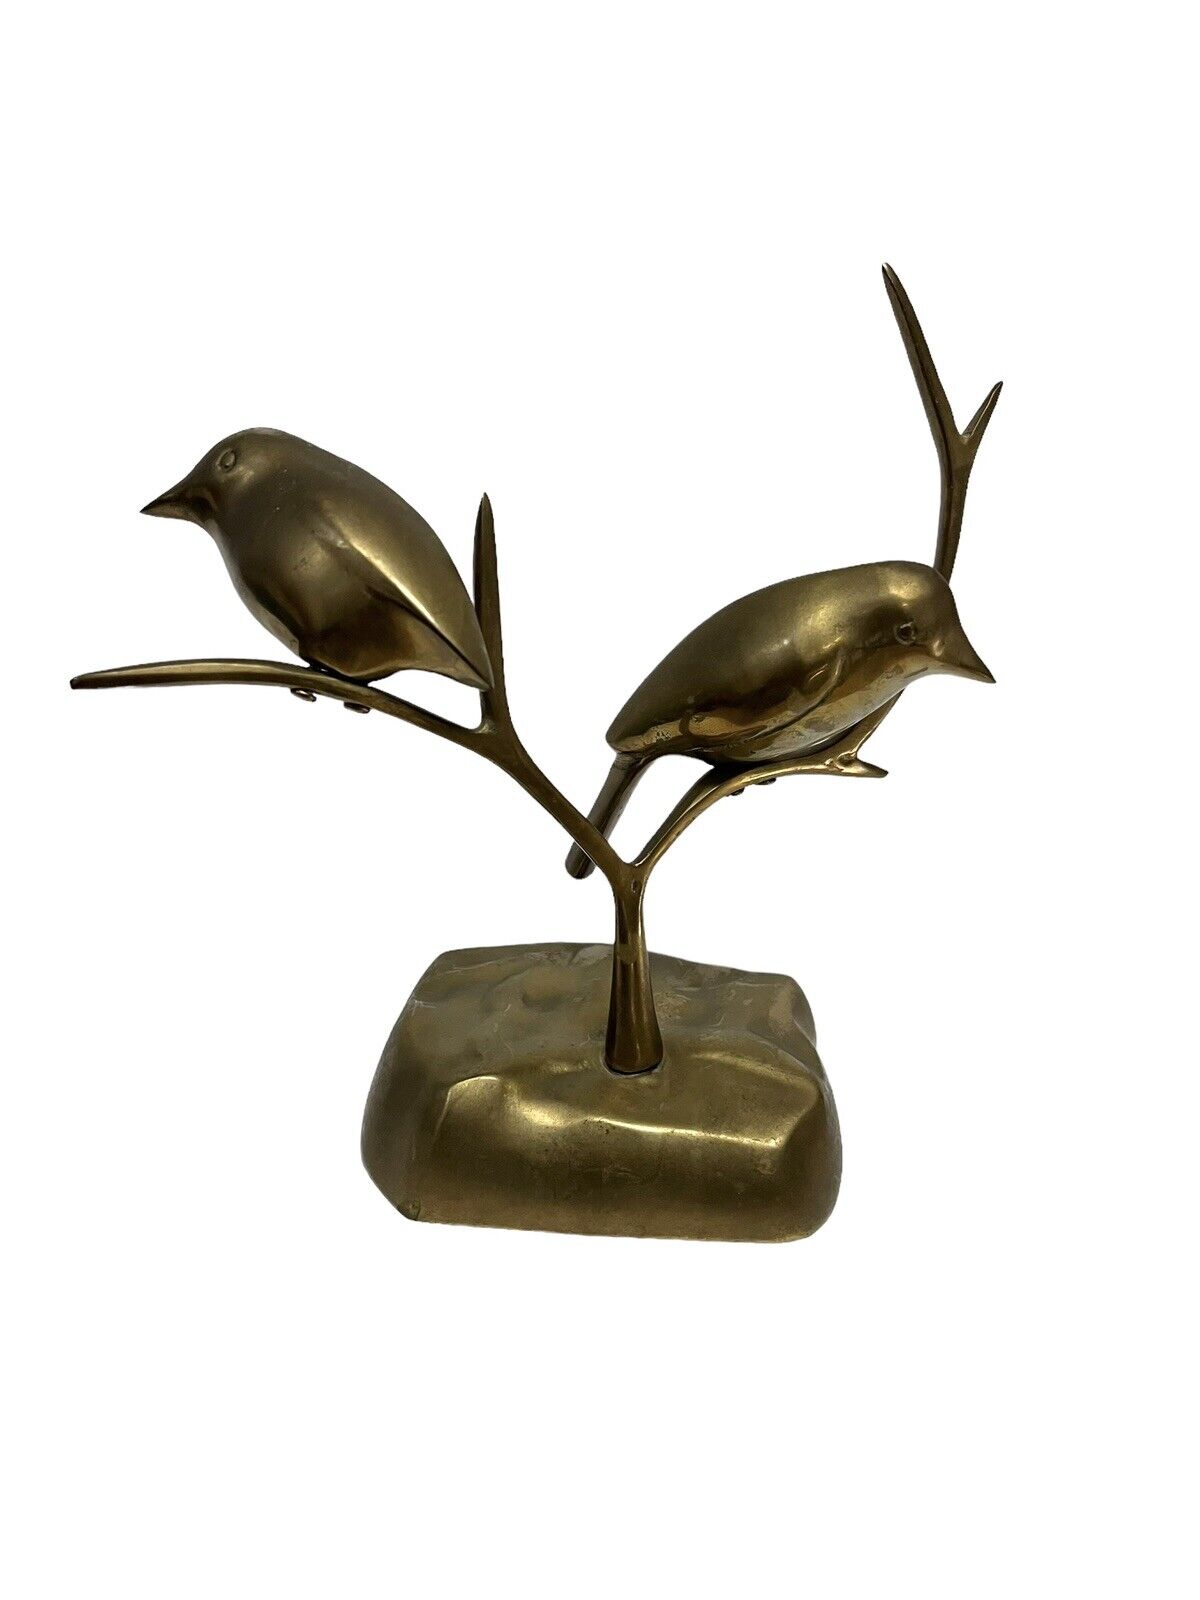 Vintage Dolbi Cashier 1980 Brass Birds Bird Perched On Branch Sculpture 8”